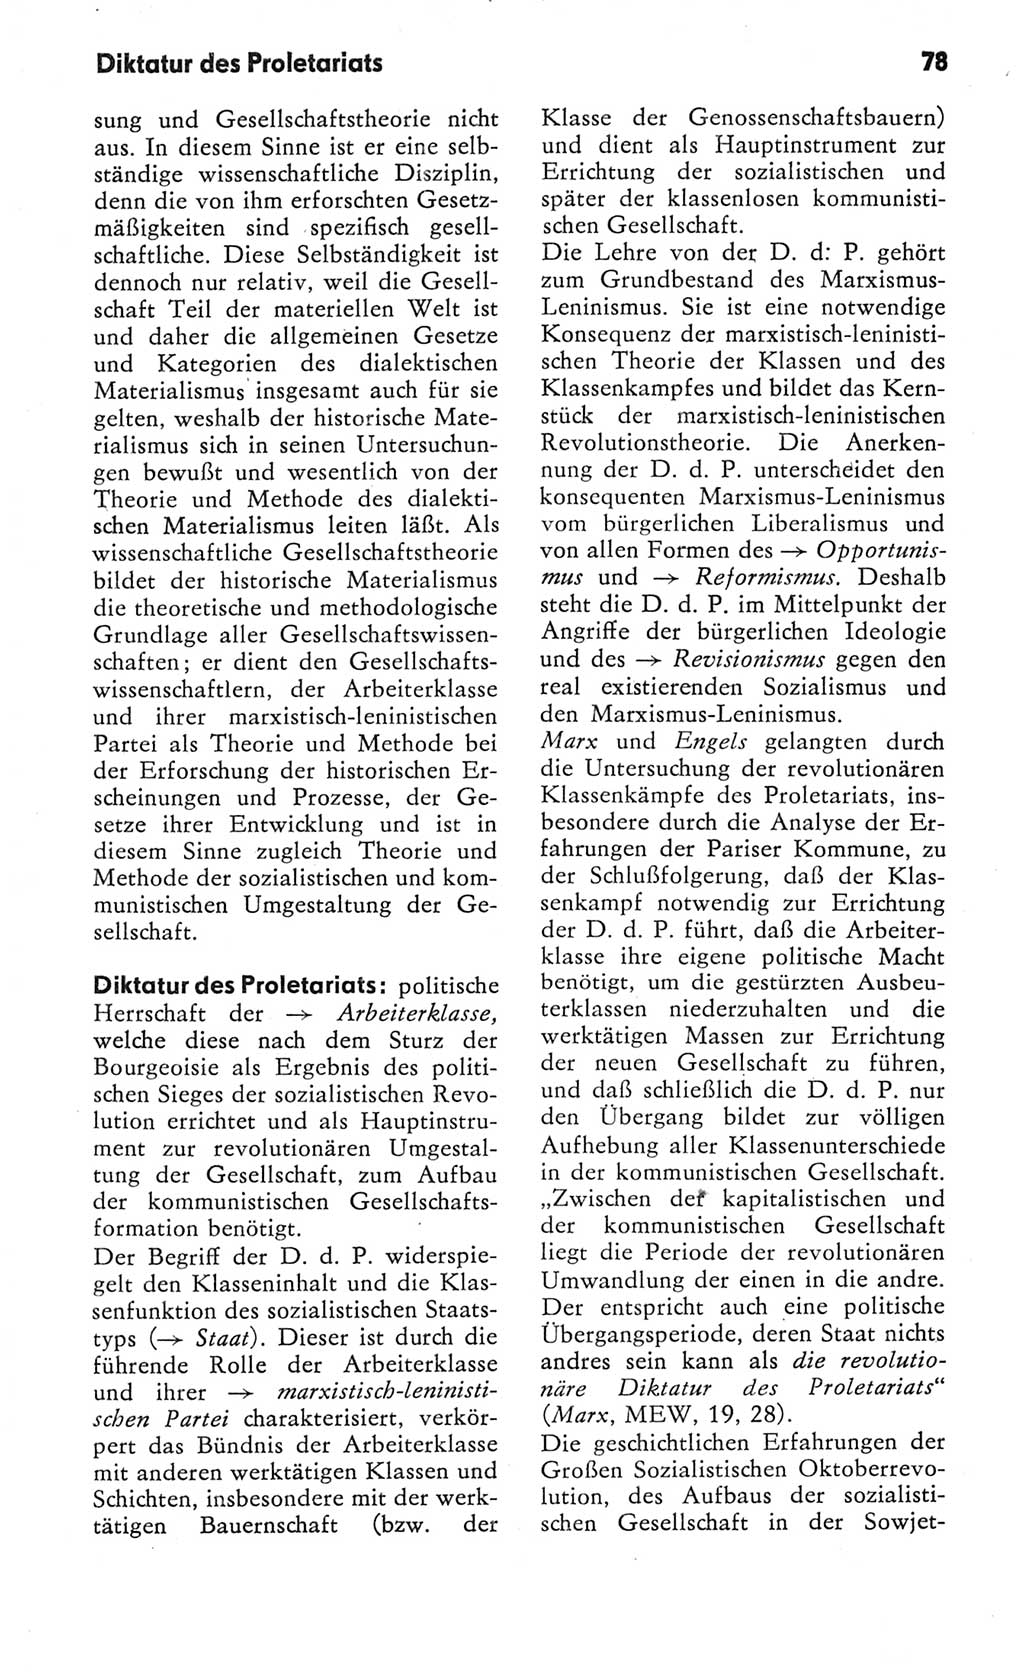 Kleines Wörterbuch der marxistisch-leninistischen Philosophie [Deutsche Demokratische Republik (DDR)] 1982, Seite 78 (Kl. Wb. ML Phil. DDR 1982, S. 78)